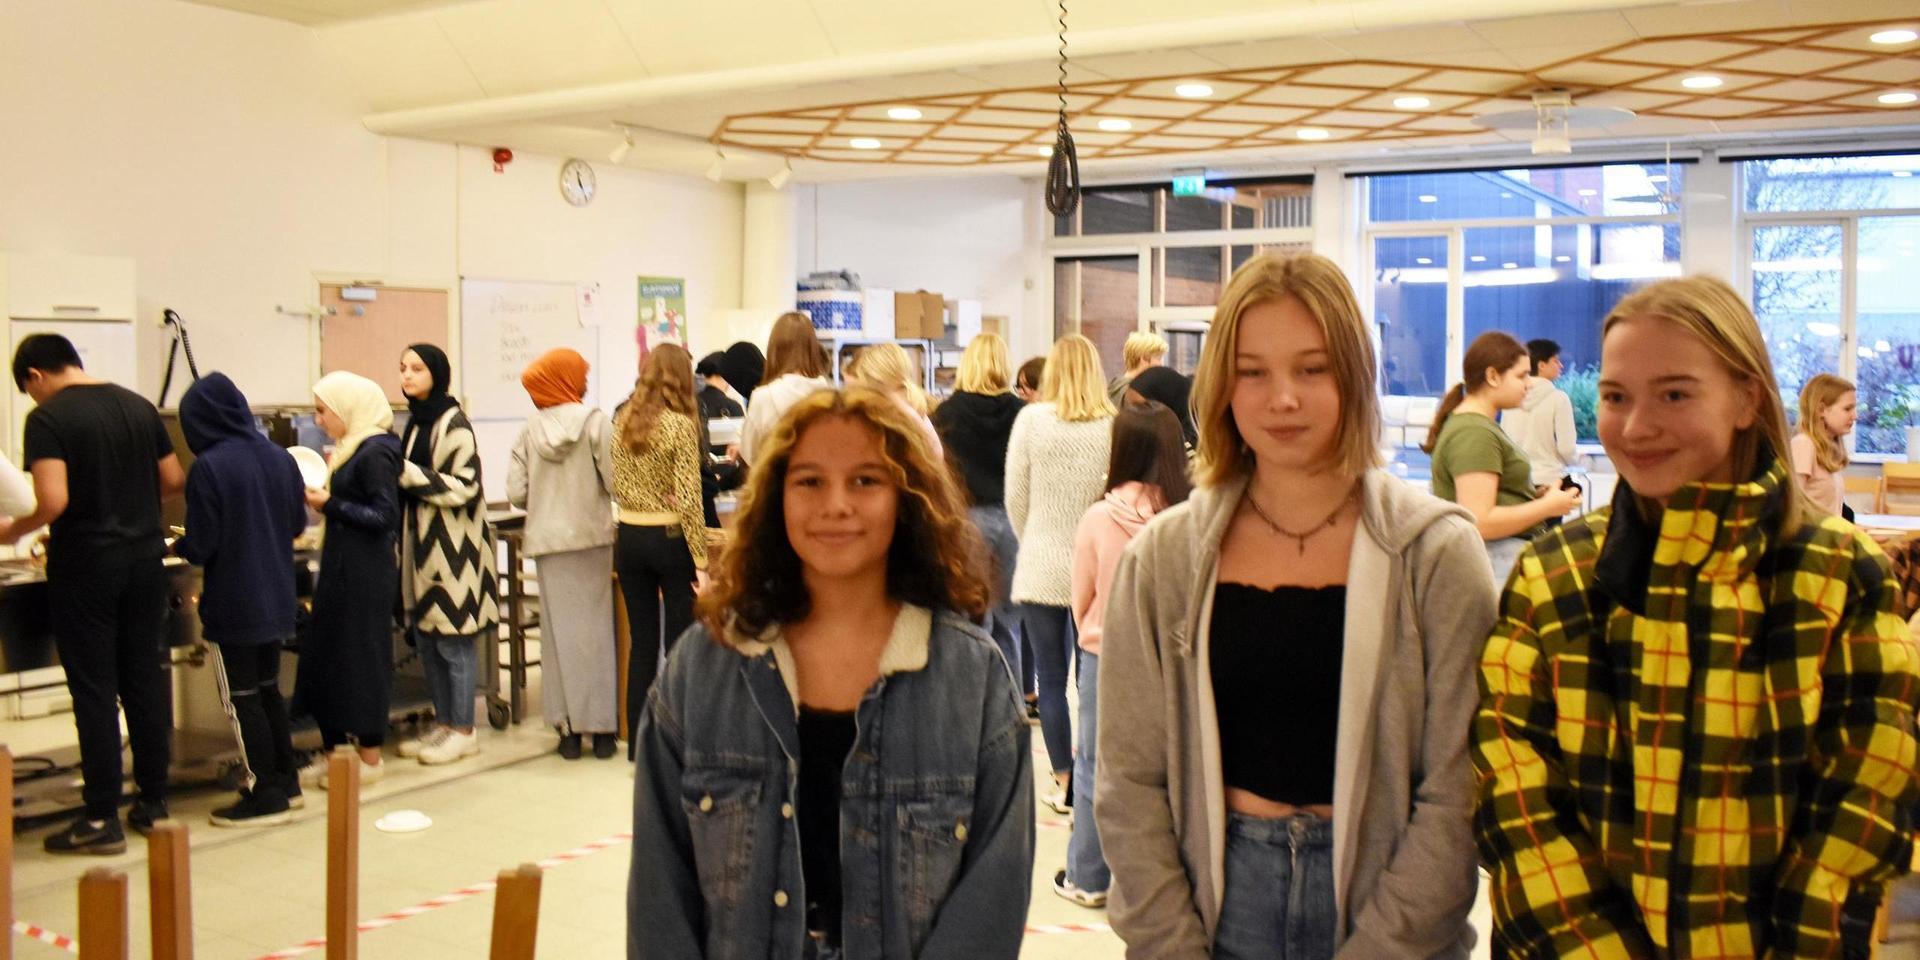 Denise Lindvall, Esther Bohman och Signe Hägglund ingår i elevernas matråd på högstadieskolan. De är kritiska, exempelvis till den långa matkön som syns i bakom dem.